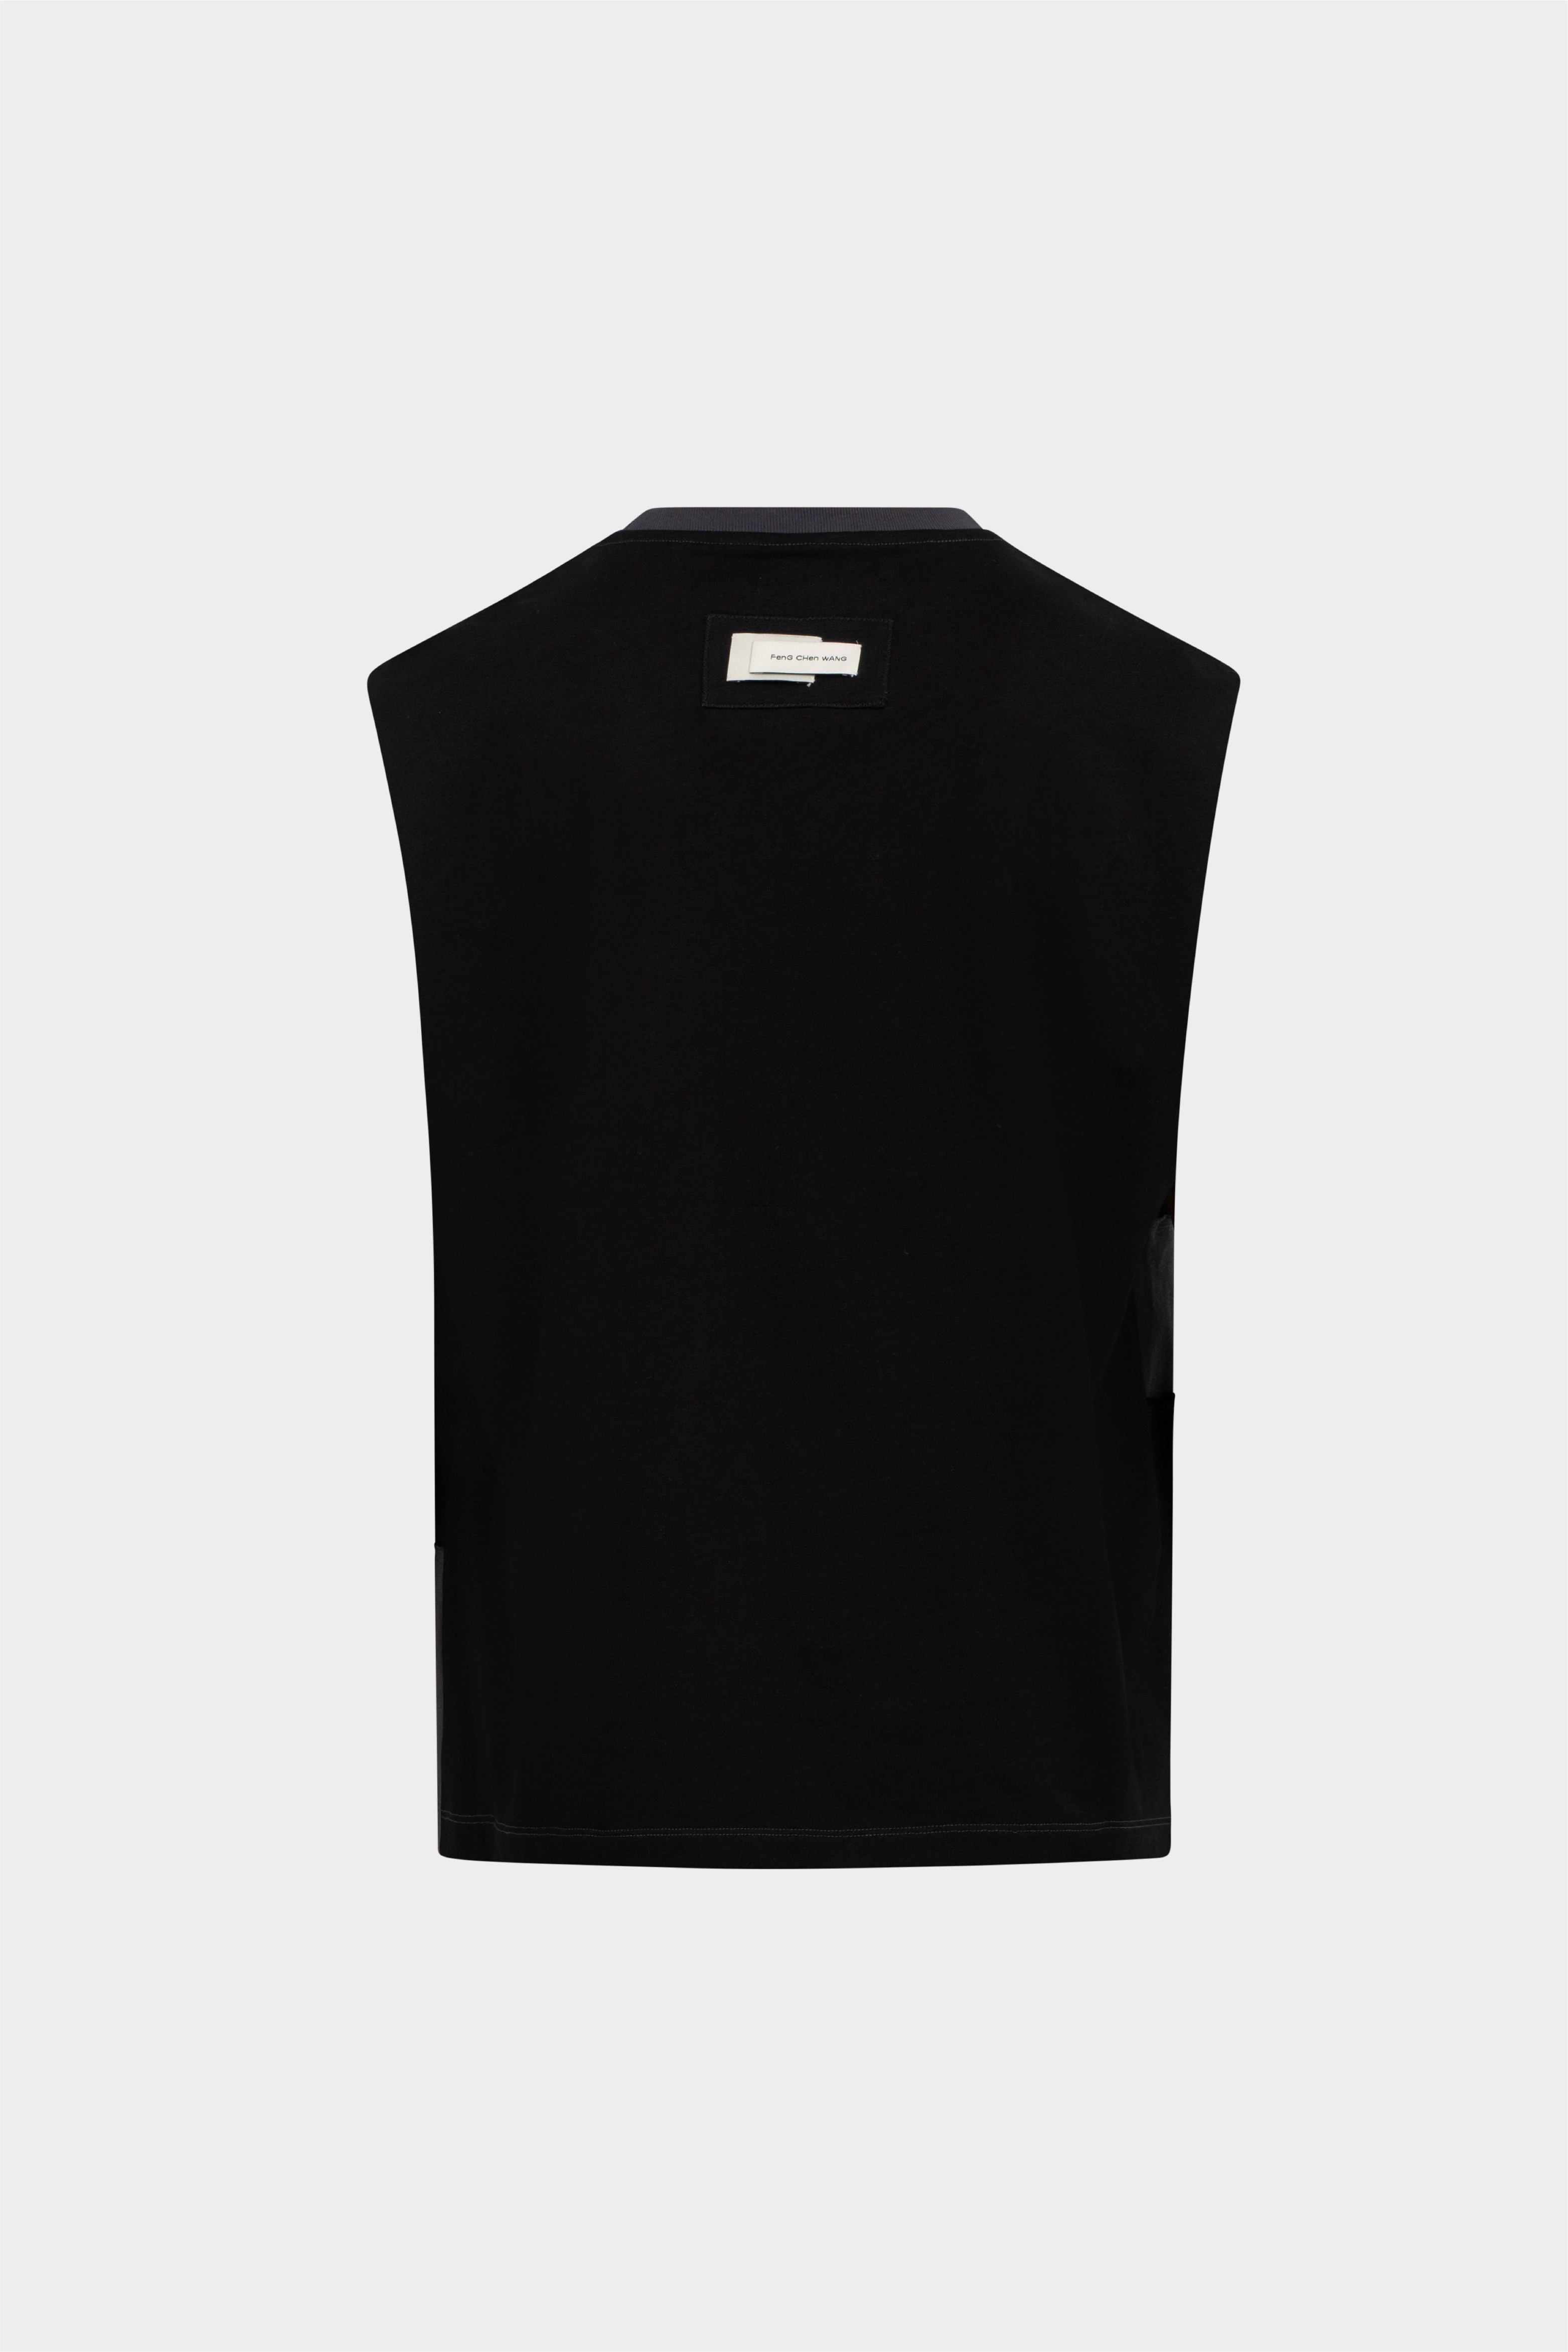 Selectshop FRAME - FENG CHEN WANG Deconstructed Patch Vest Outerwear Concept Store Dubai